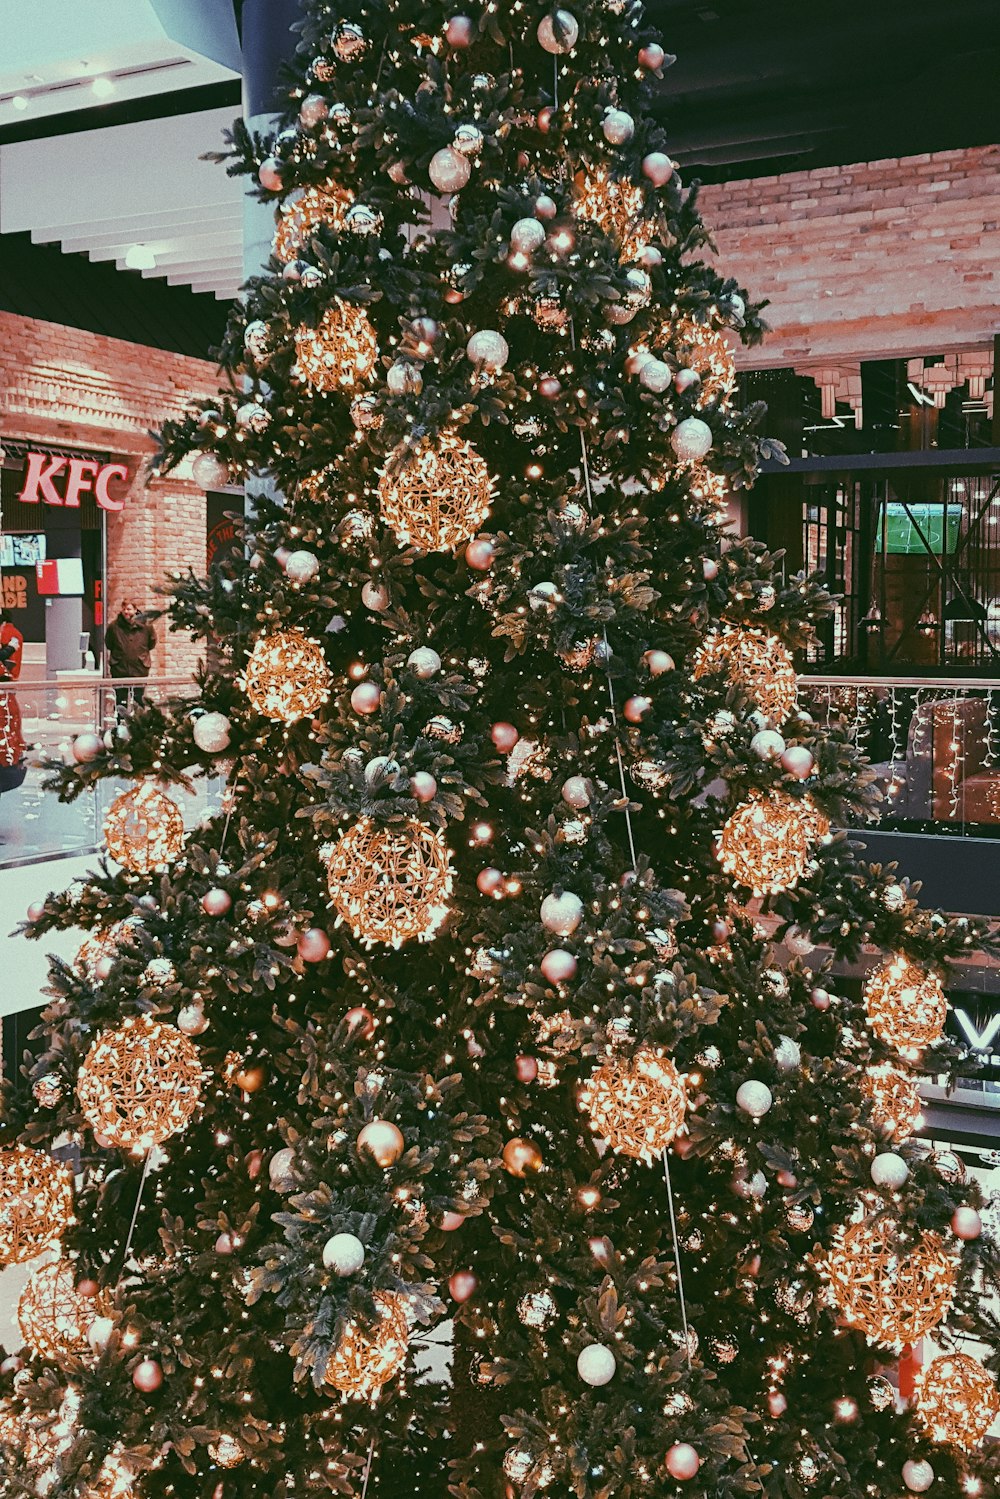 green and brown Christmas tree